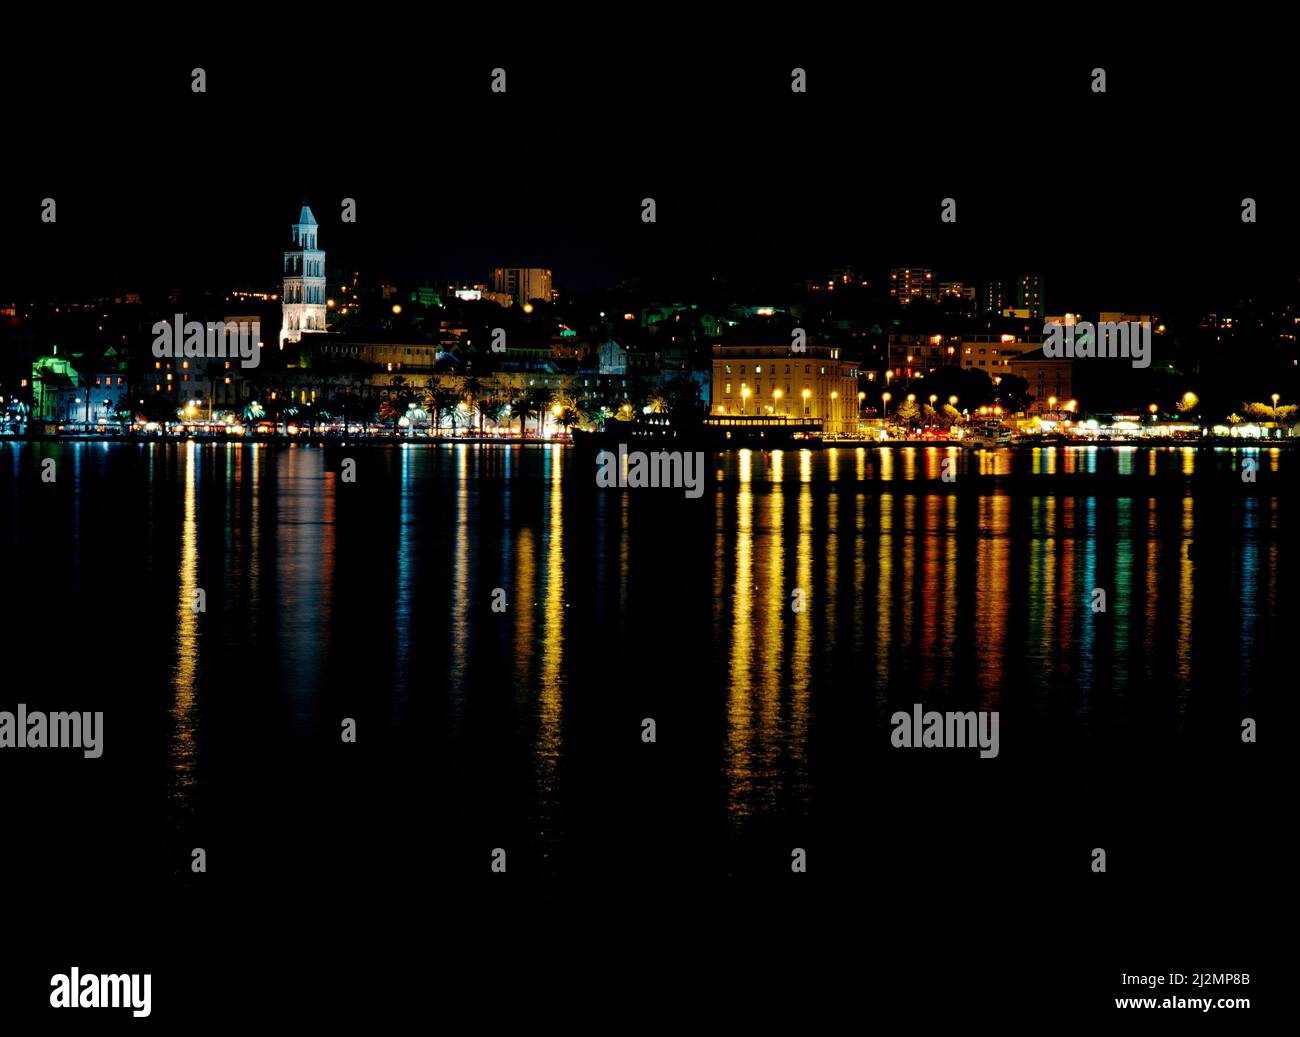 Ville de Split, réfection nocturne d'eau claire, Croatie Banque D'Images